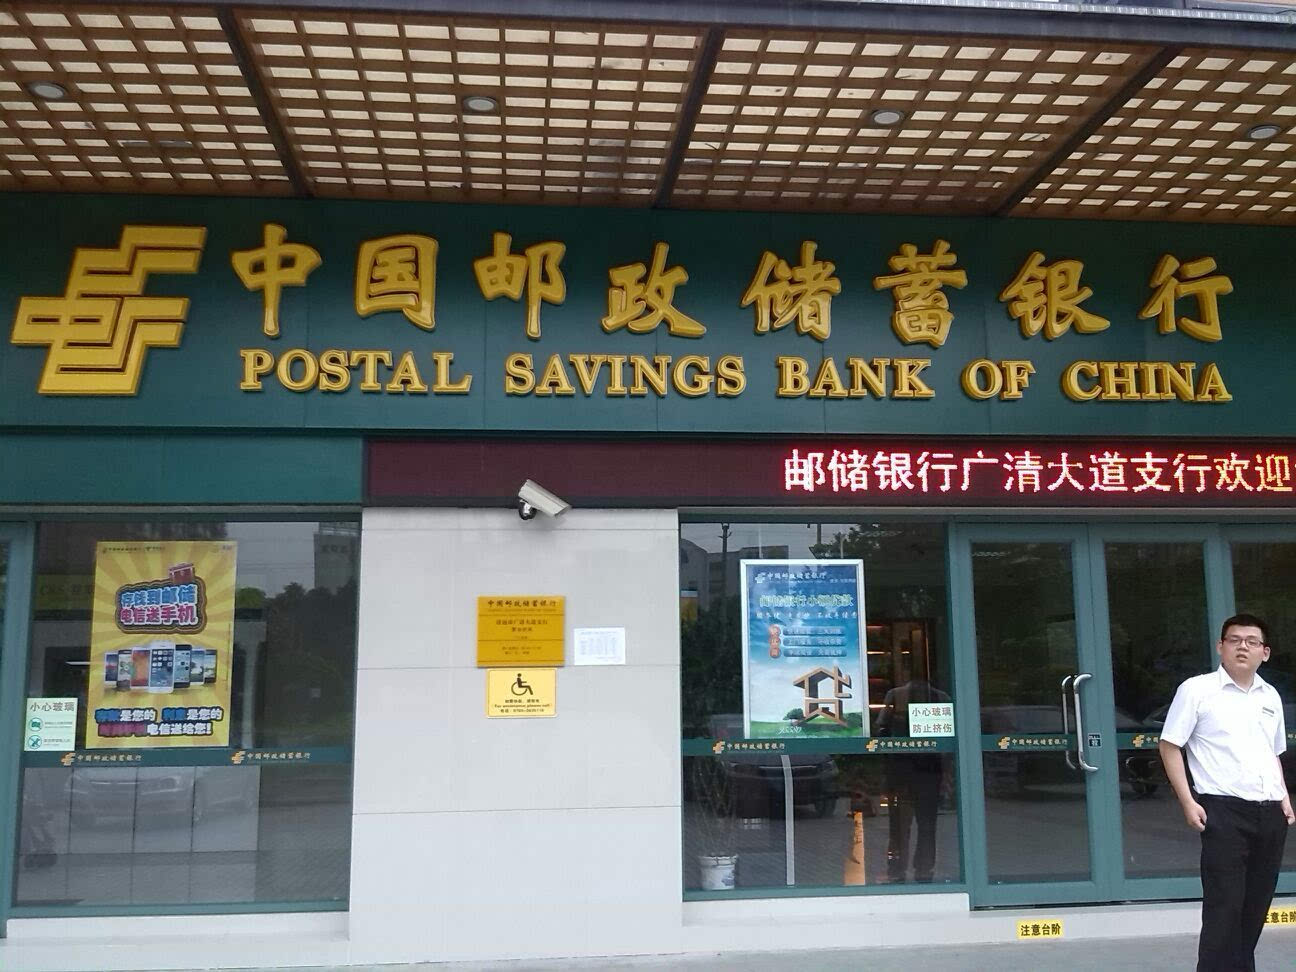 中国邮政储蓄银行即将香港上市:募资或达100亿